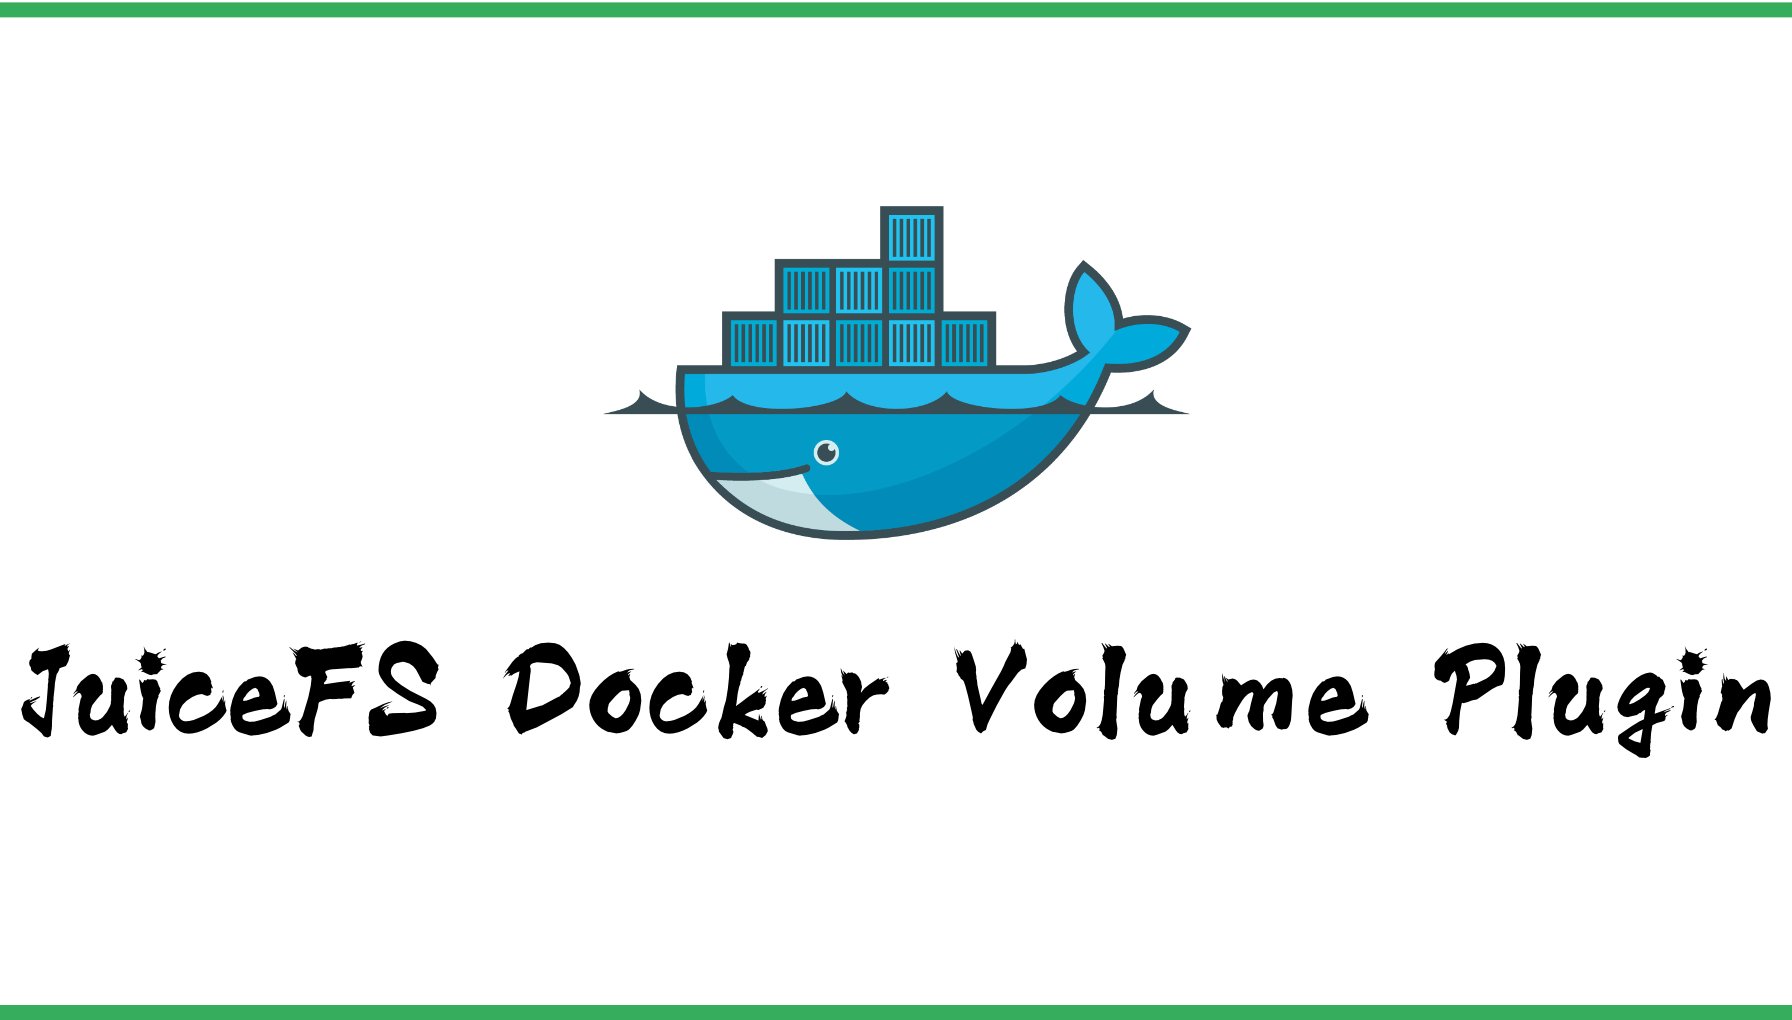 用 JuiceFS 为 Docker 容器提供持久化云存储